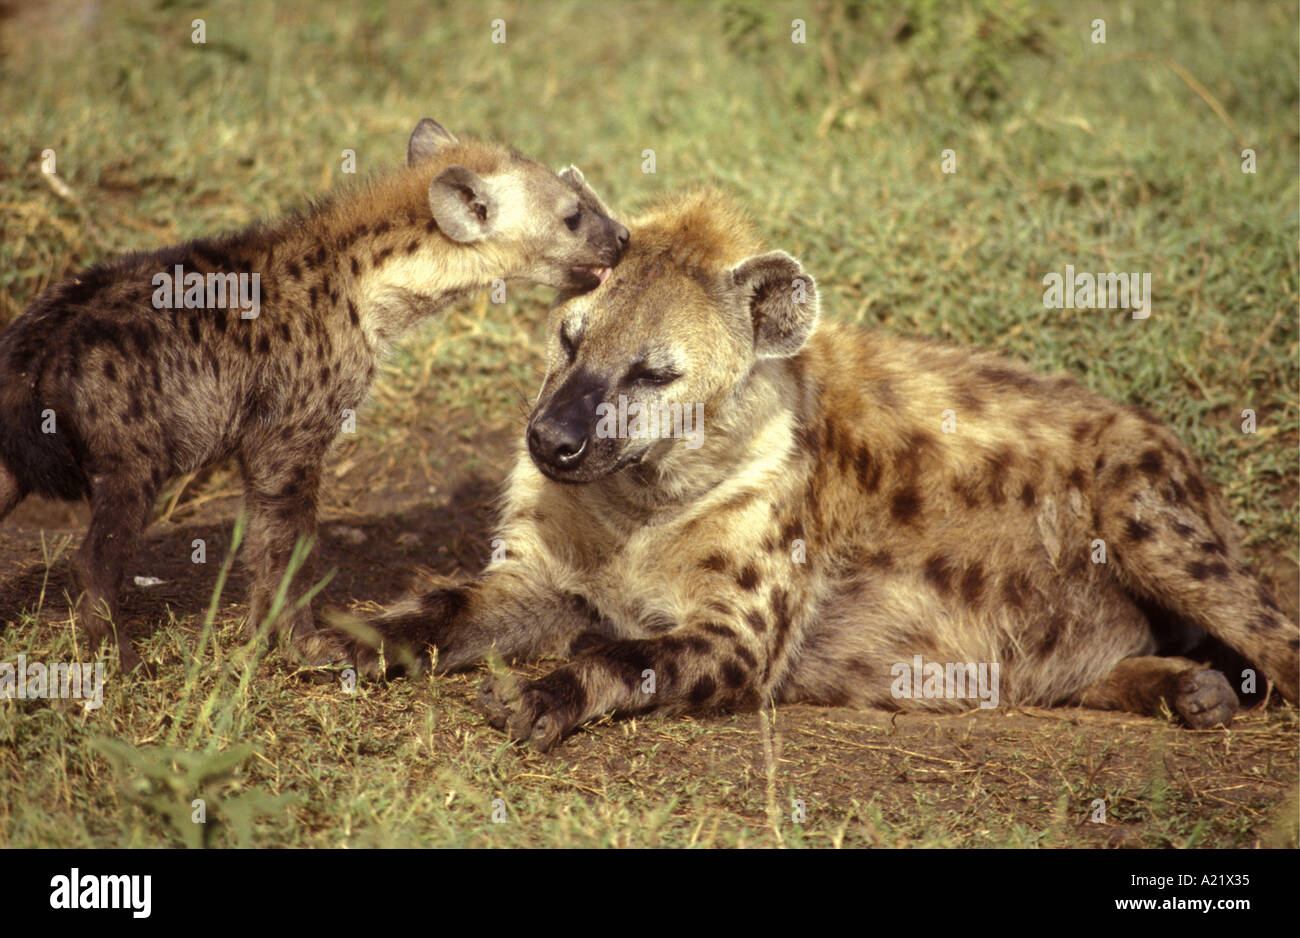 L'Hyène tachetée adultes être toiletté et accueillis par un chiot immatures de la réserve nationale de Masai Mara au Kenya Afrique de l'Est Banque D'Images